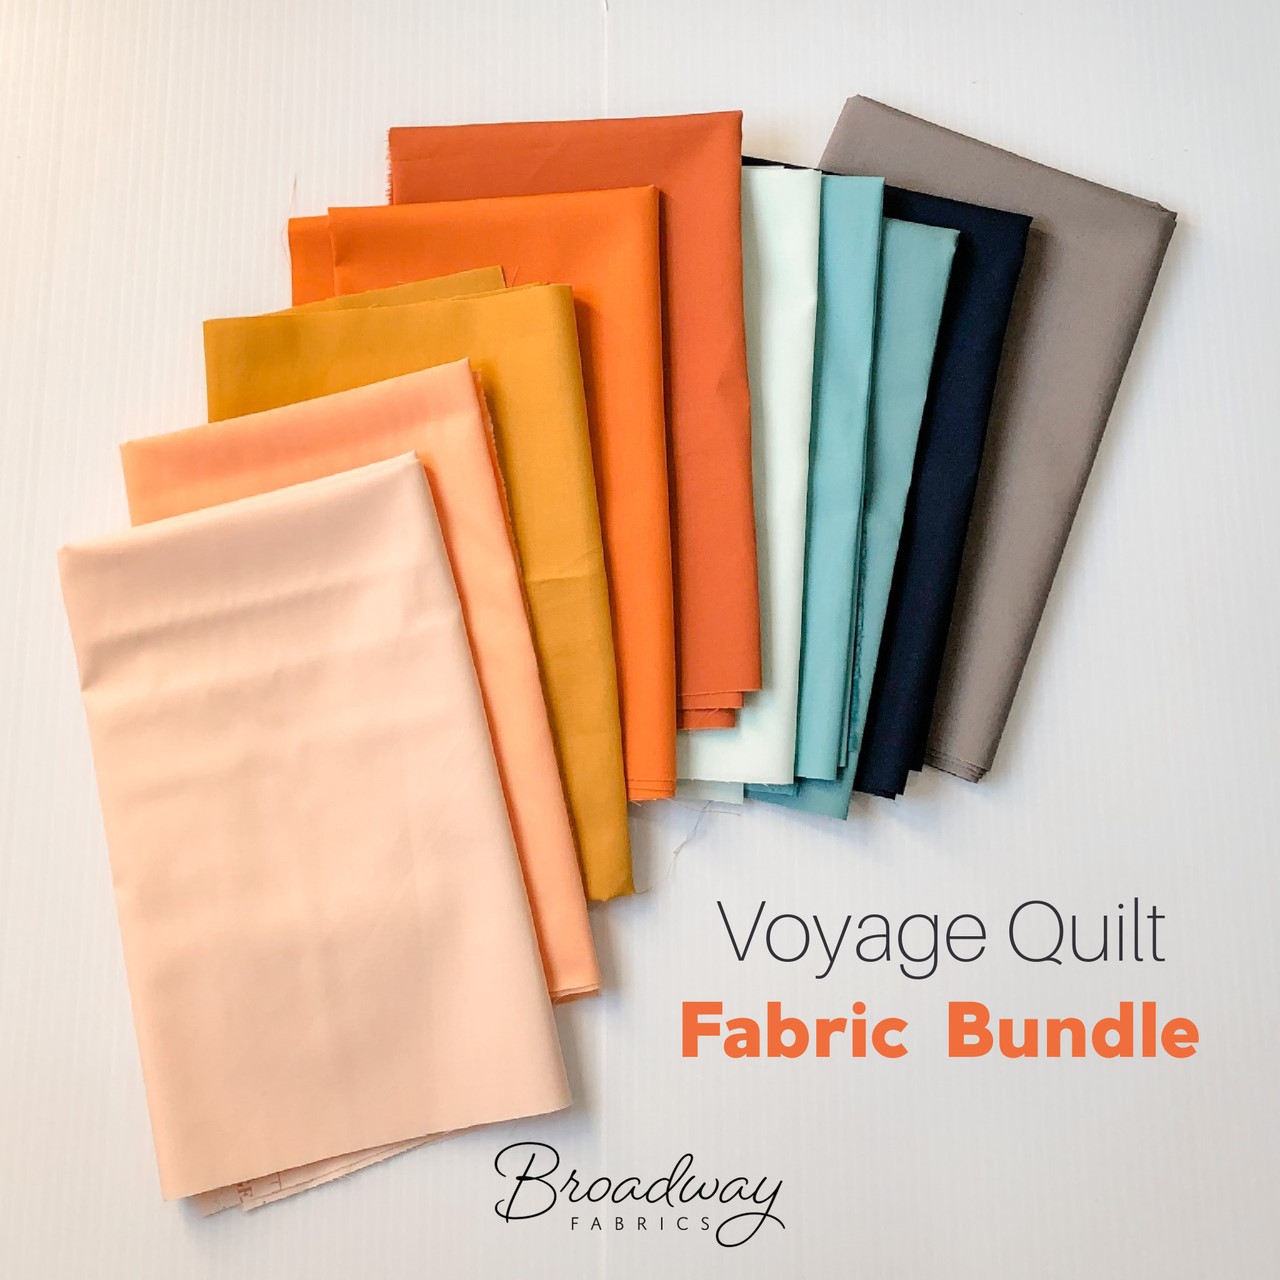 Voyage Quilt Fabric Bundle - Suzy Quilts Voyage Quilt fat quarter bundle